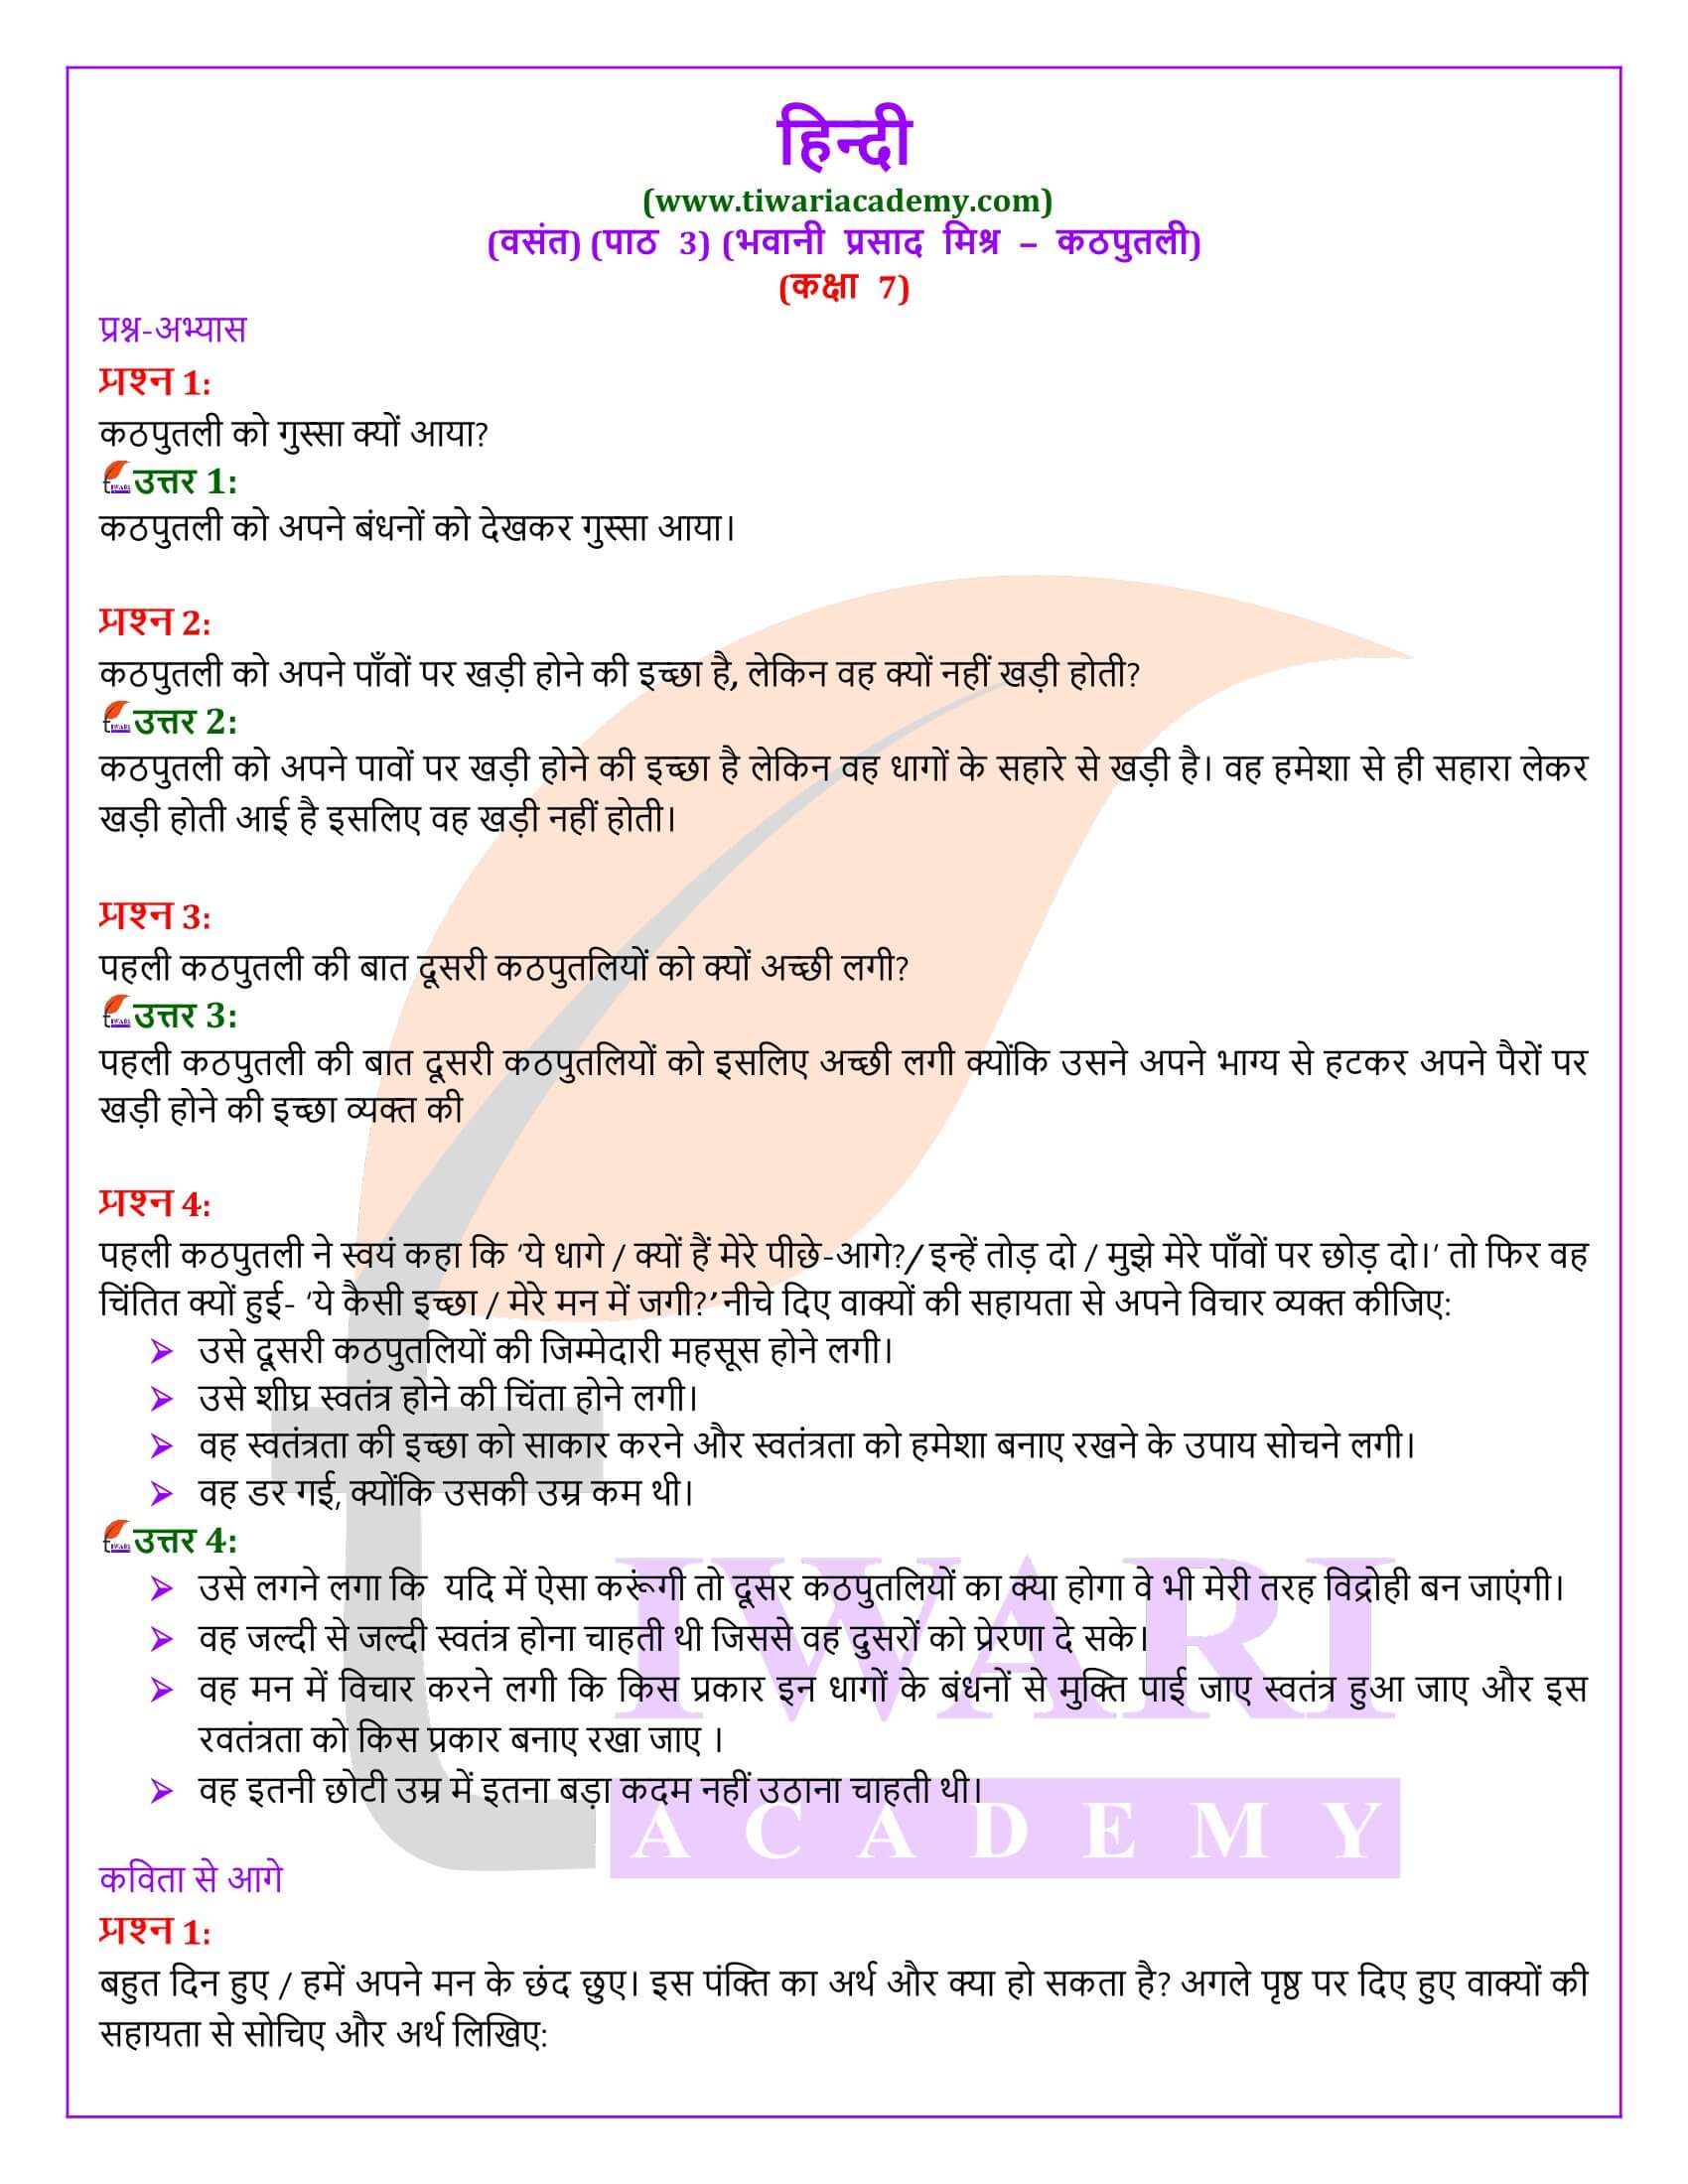 कक्षा 7 हिंदी वसंत अध्याय 3 कठपुतली के प्रश्न उत्तर